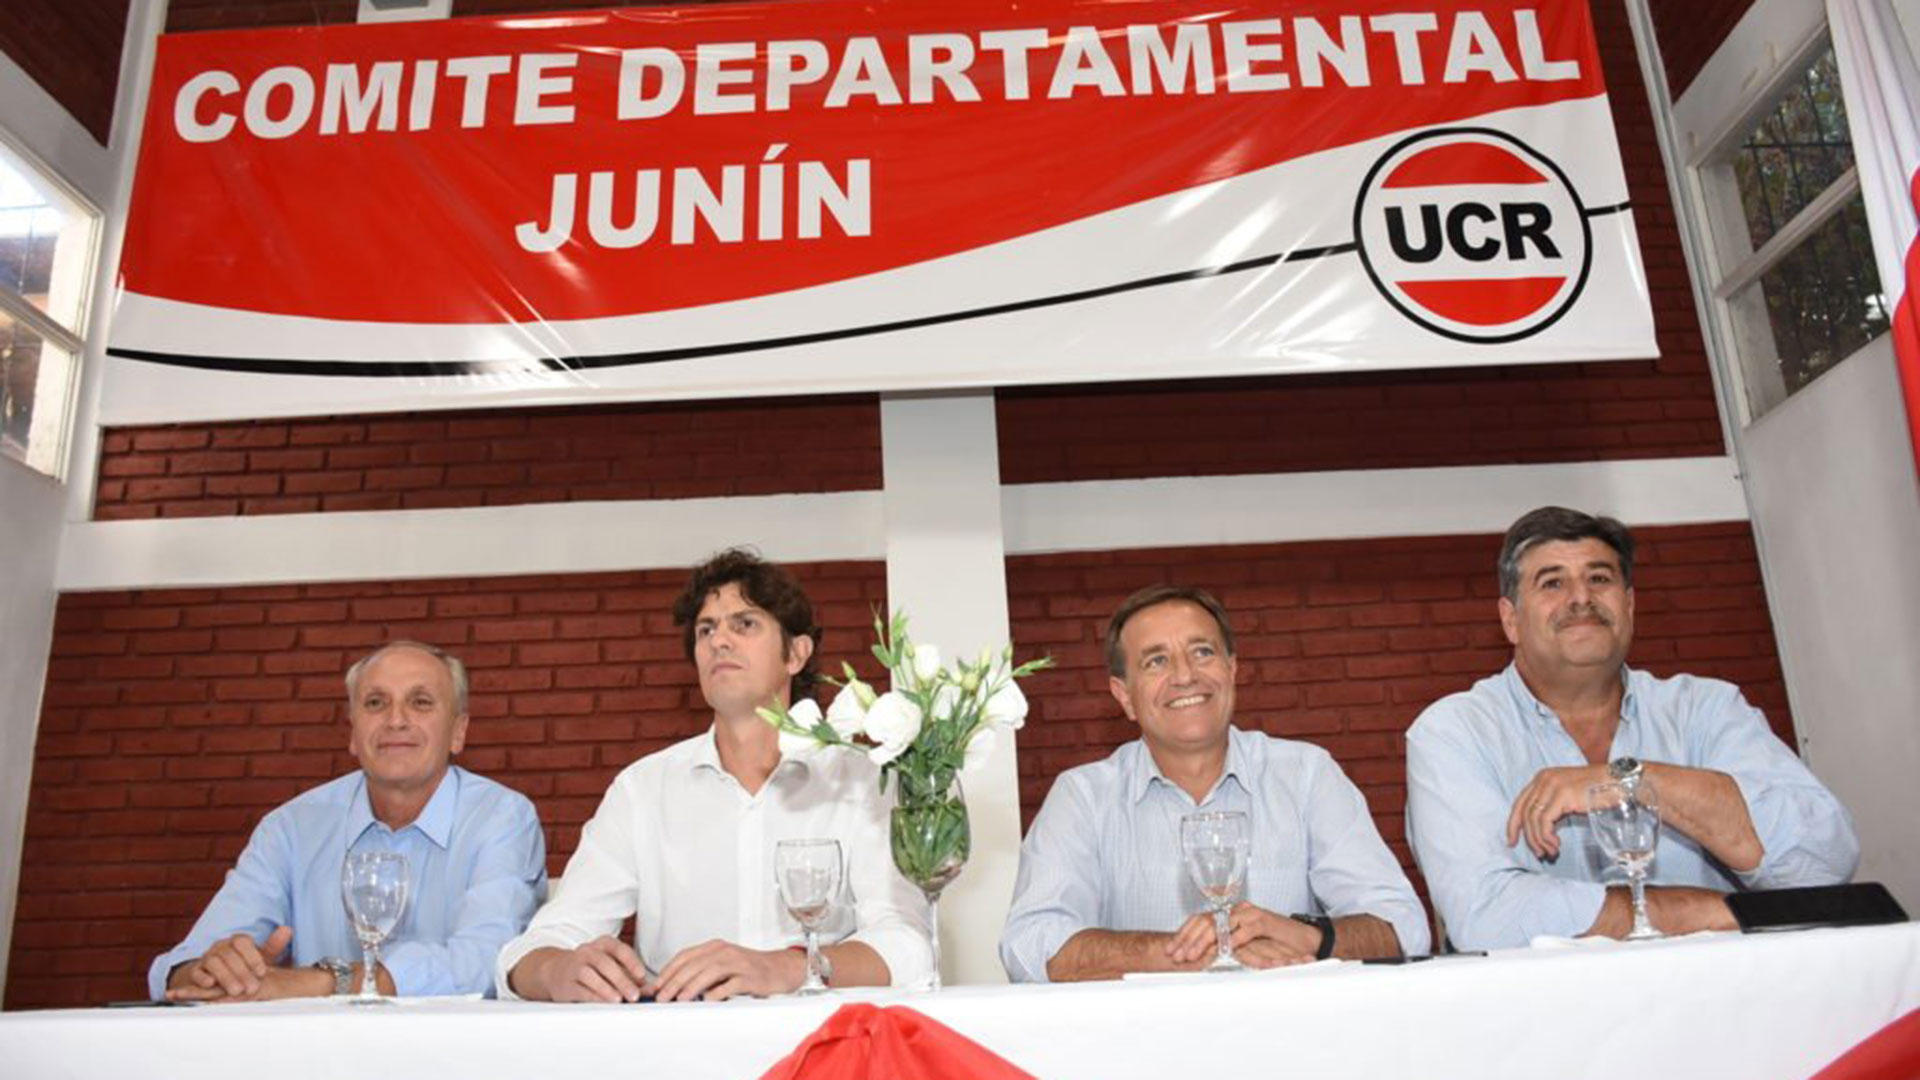 Raúl Rufeil, precandidato a intendente con Martín Lousteau, Rodolfo Suárez y Mario Abed